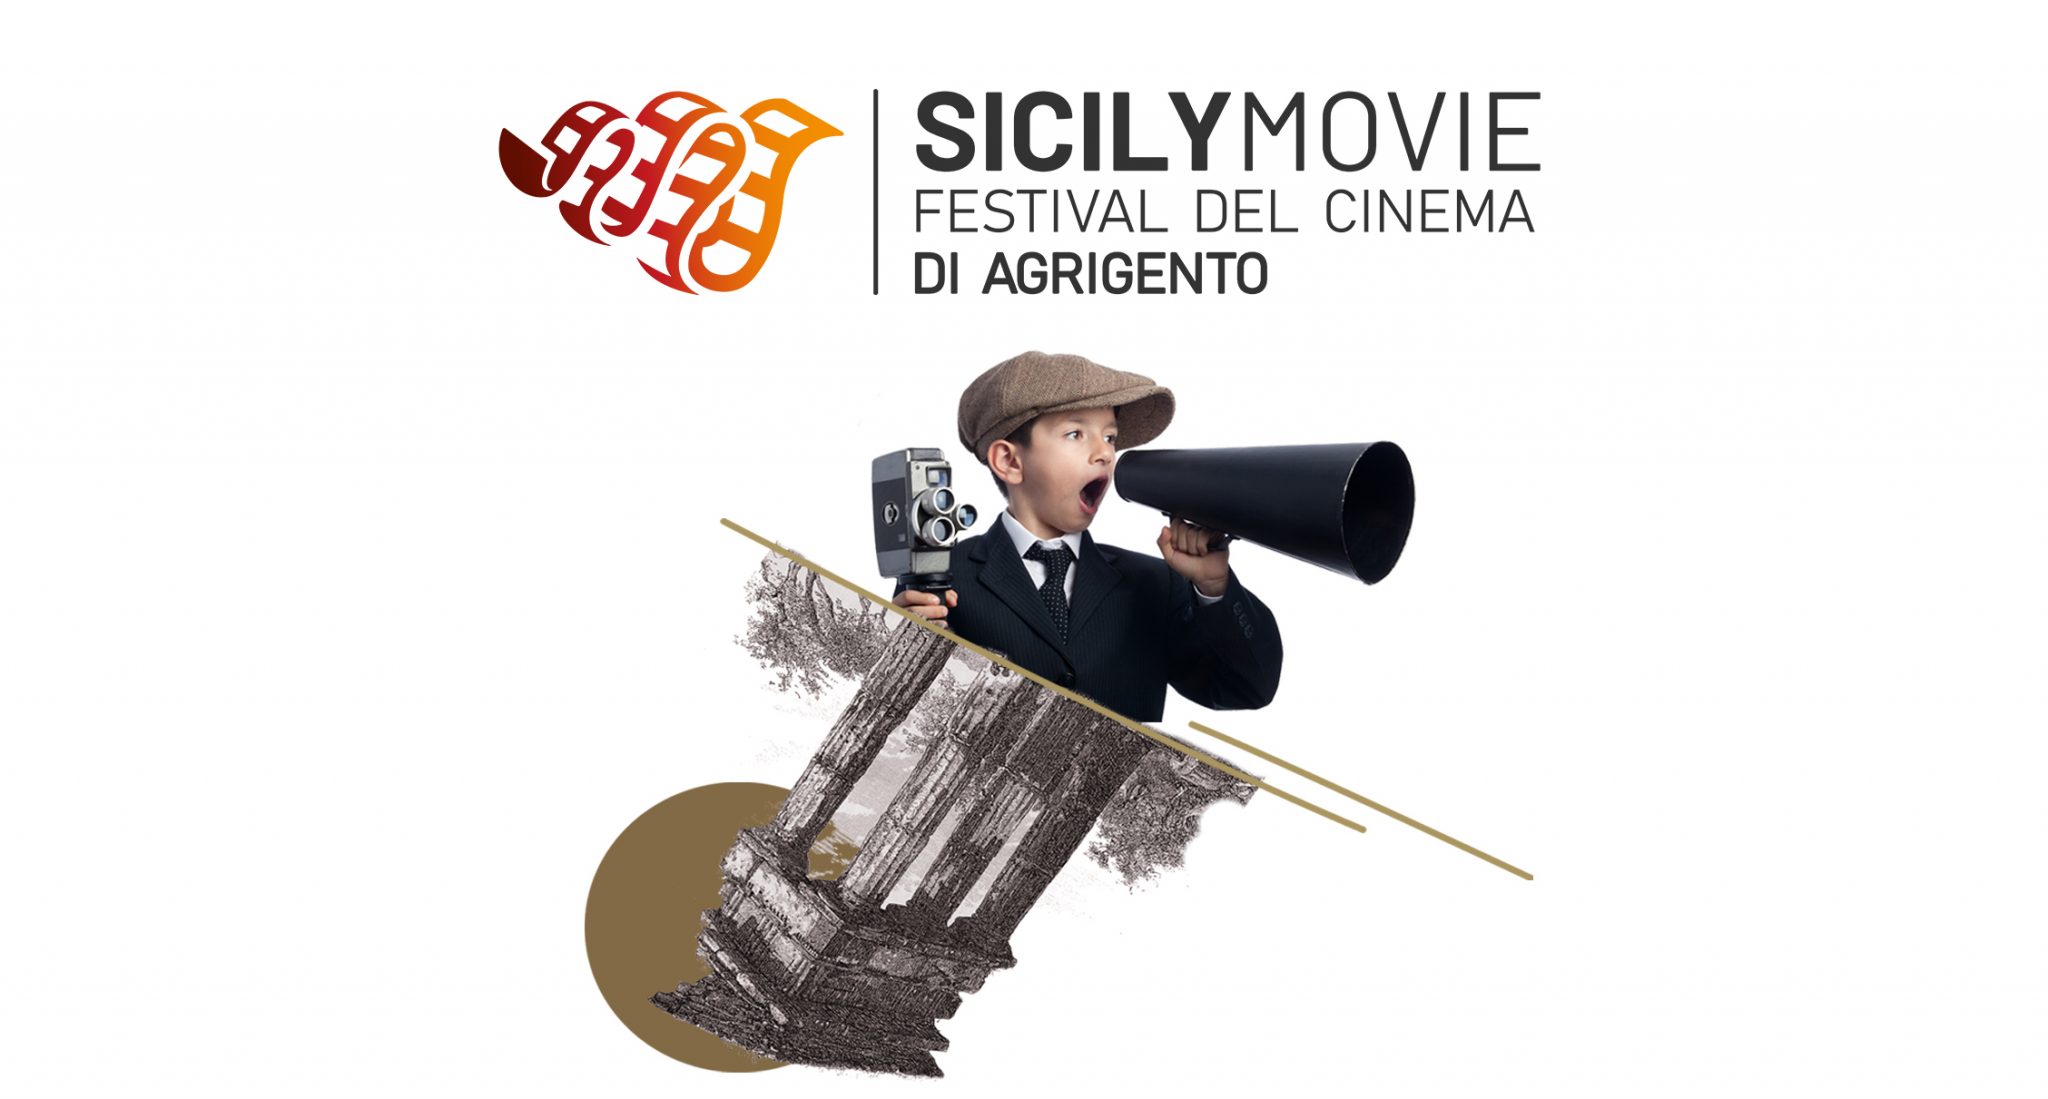 SicilyMovie – Festival del Cinema